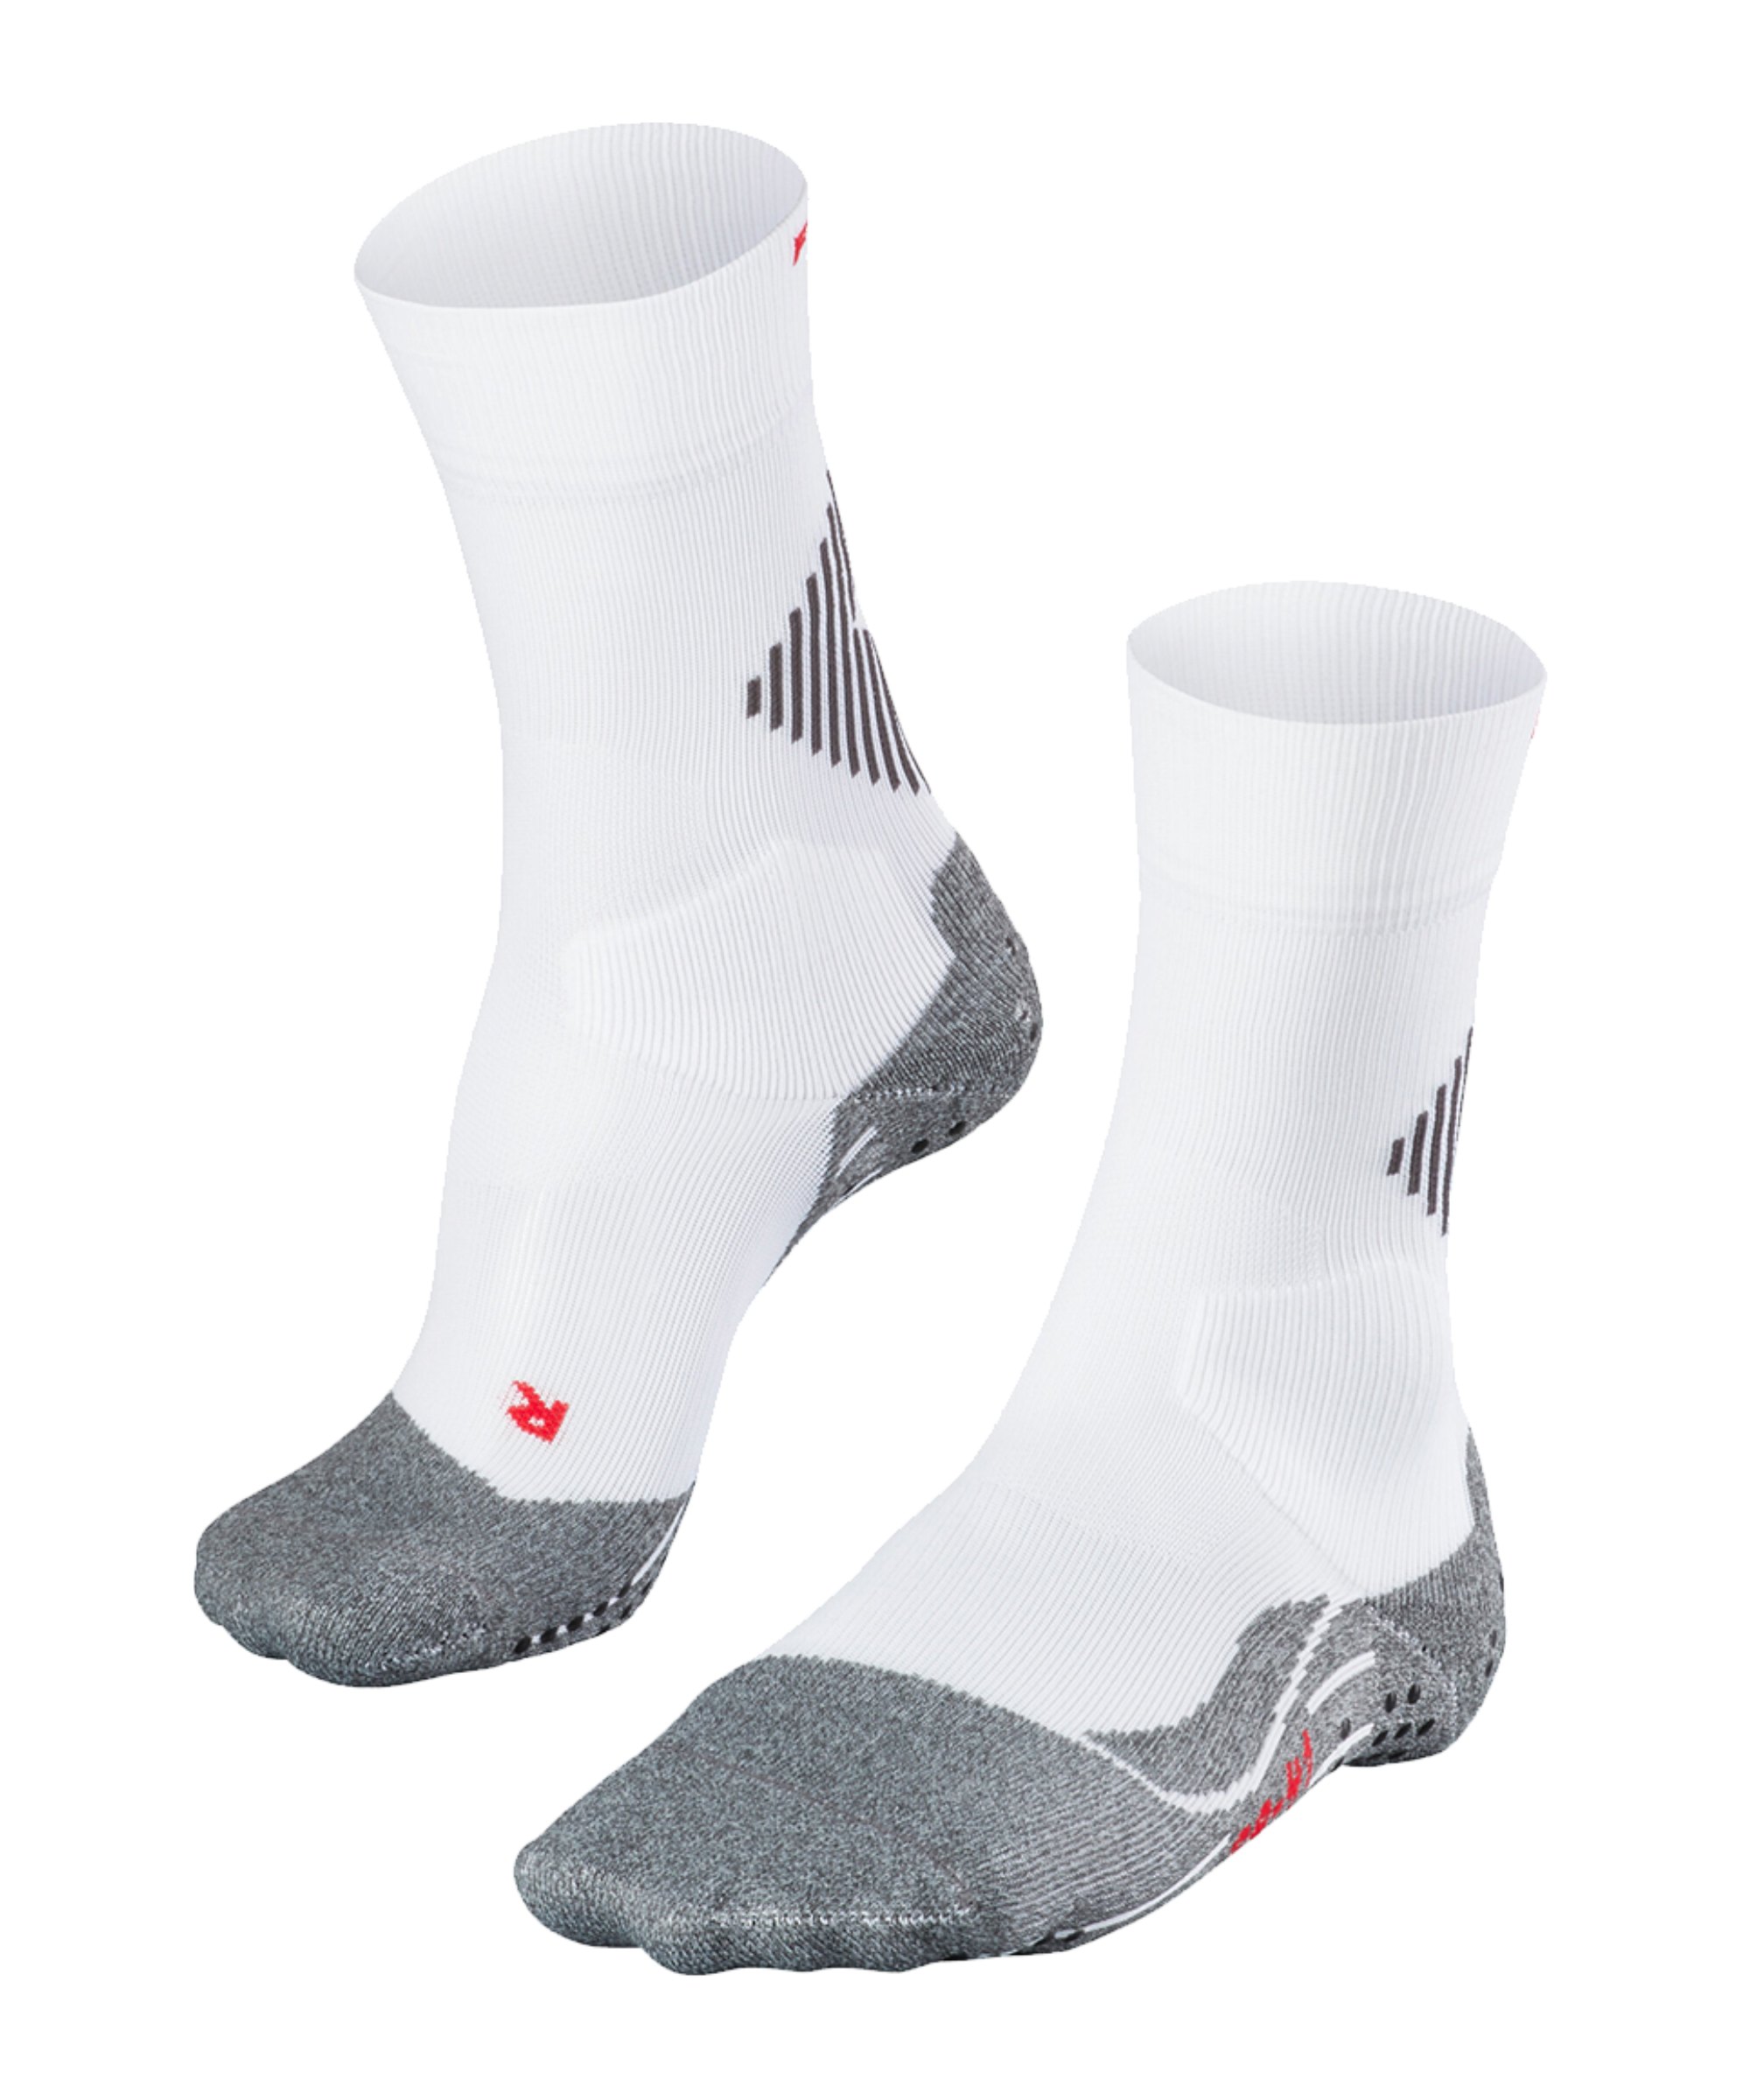 FALKE 4 Grip Stabilizing Socken Weiss F2029 - weiss